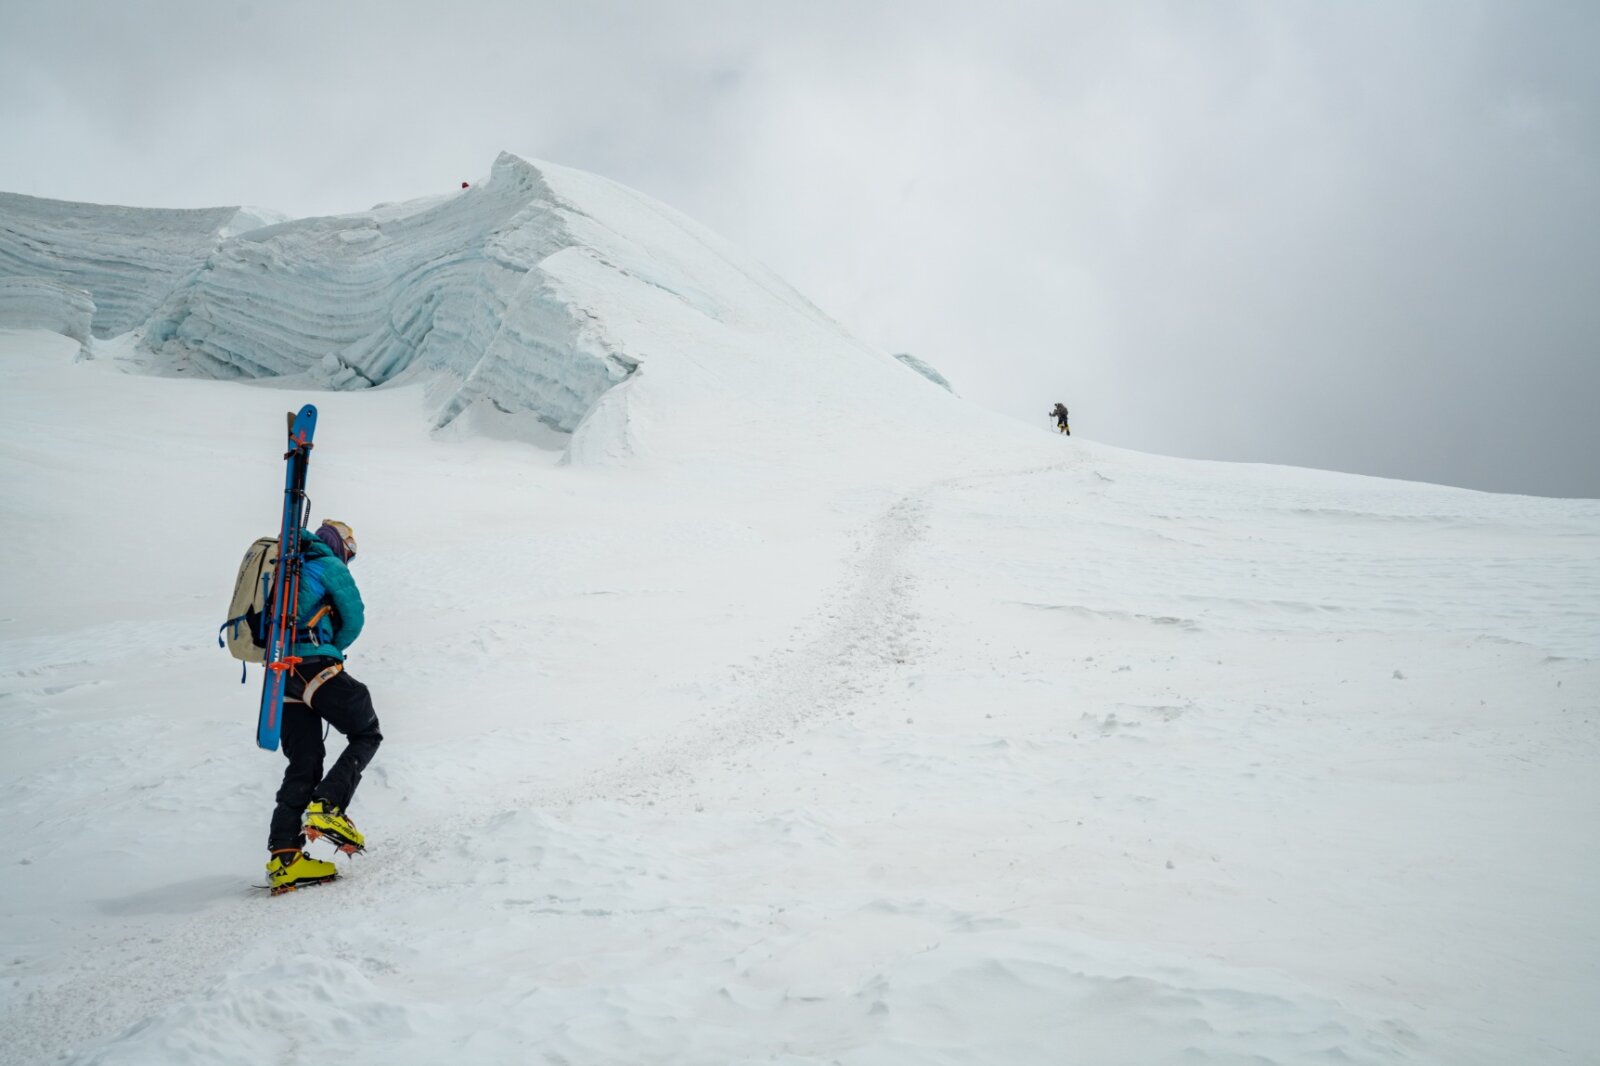 Adrian Ballinger climbing up Makalu for his ski descent of Makalu